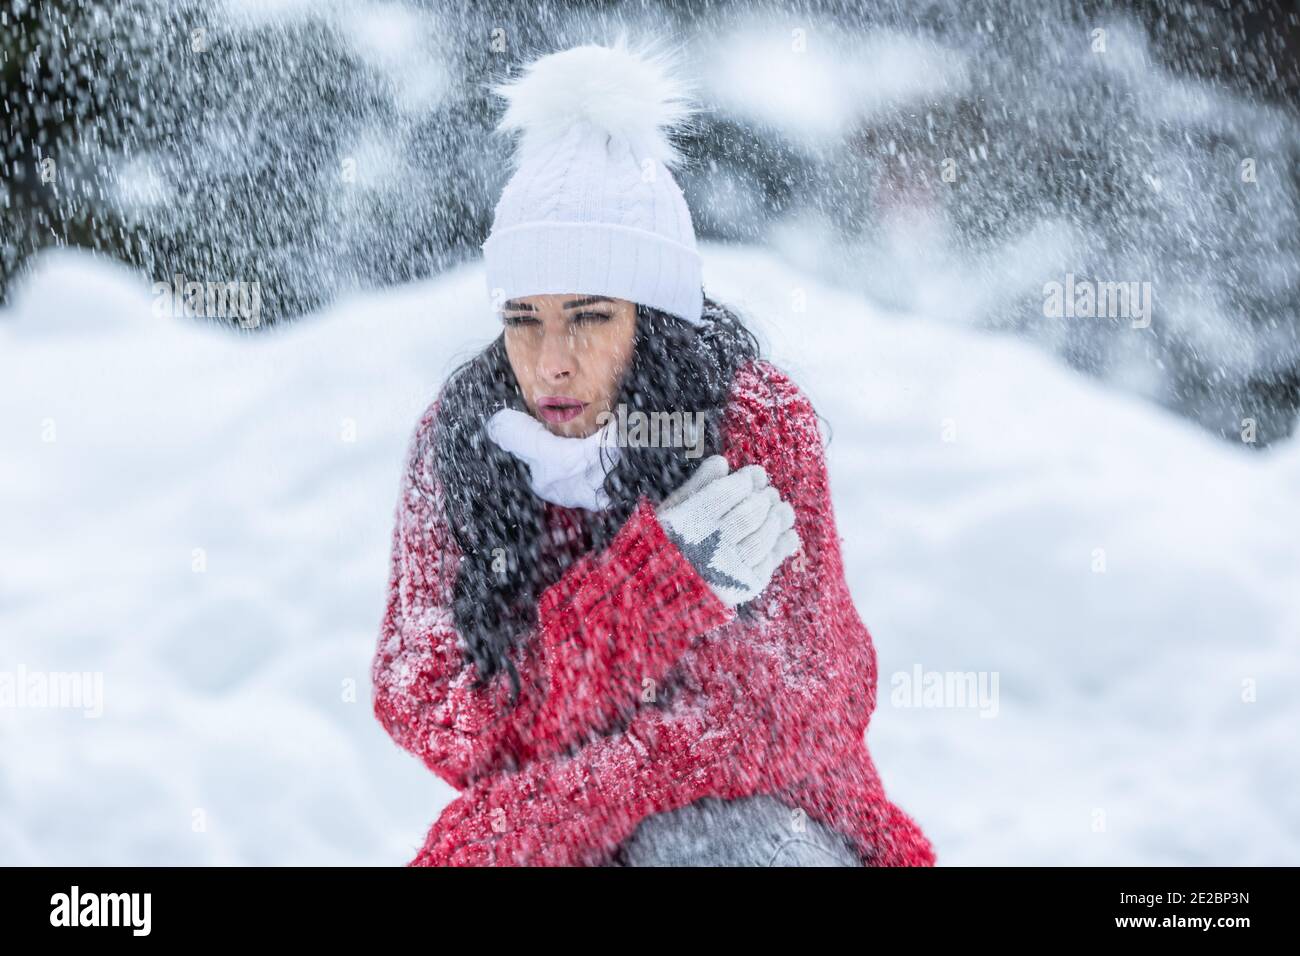 Frau zittert von Kälte während windigen verschneiten Wintertag im Freien trotz tragen warme Kleidung. Stockfoto